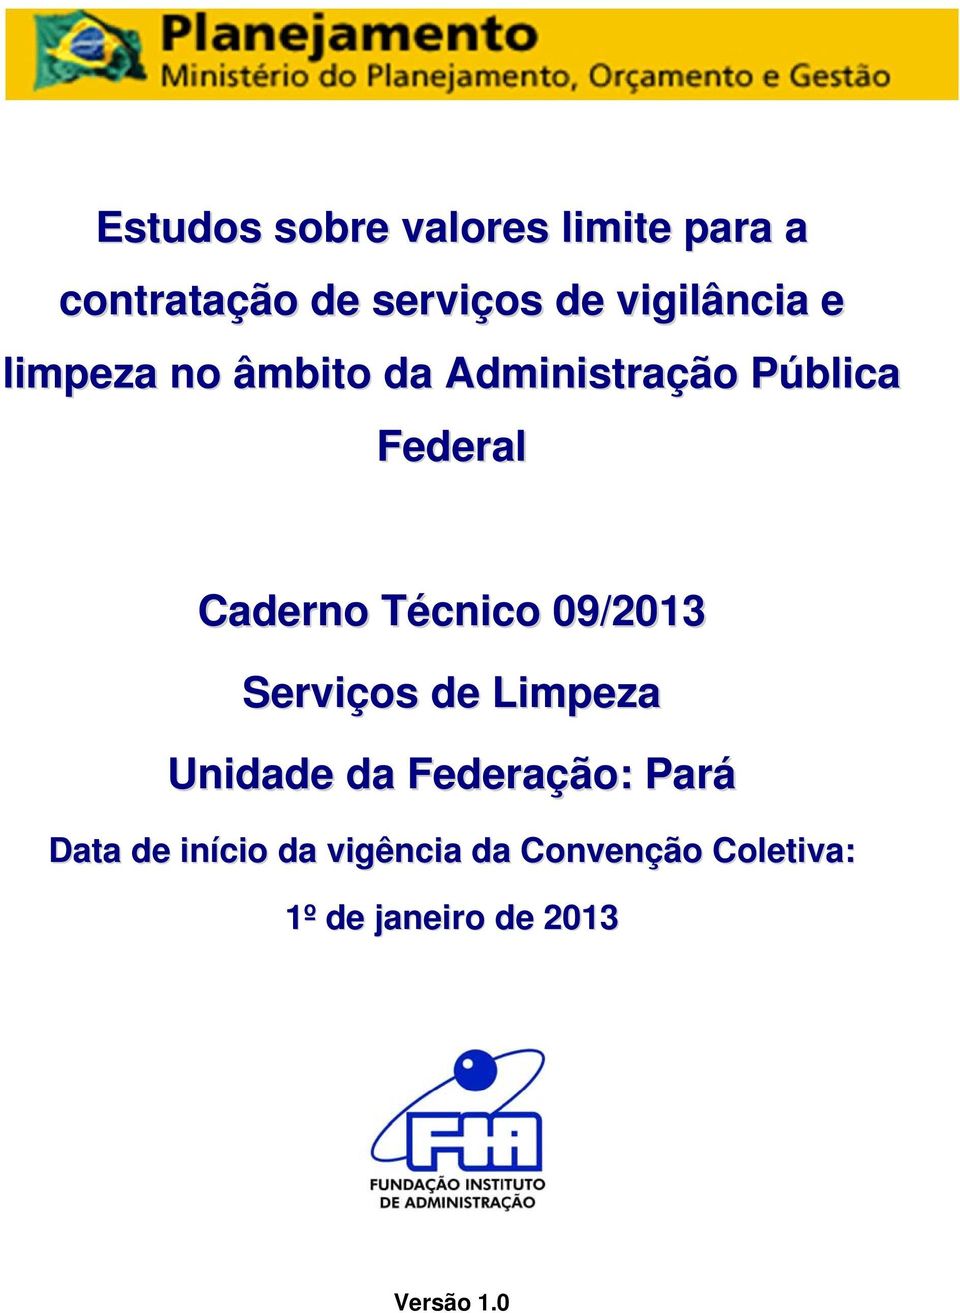 Caderno Técnico 09/2013 Serviços de Limpeza da Federação: Pará Data